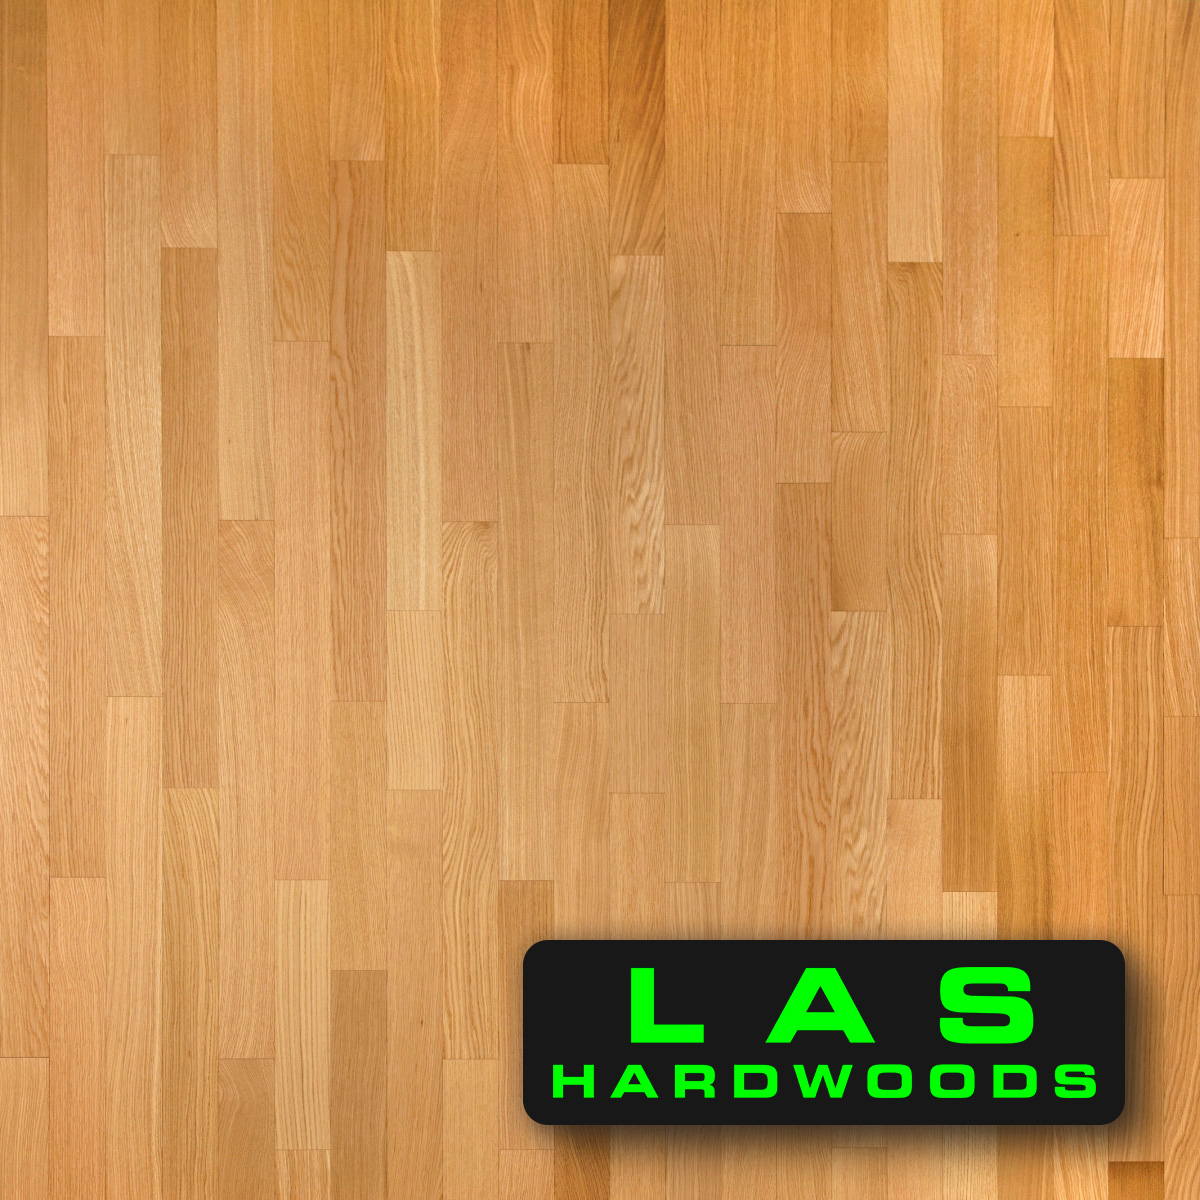 Hardwood Floors Page 2 Las Hardwoods, Las Hardwood Flooring